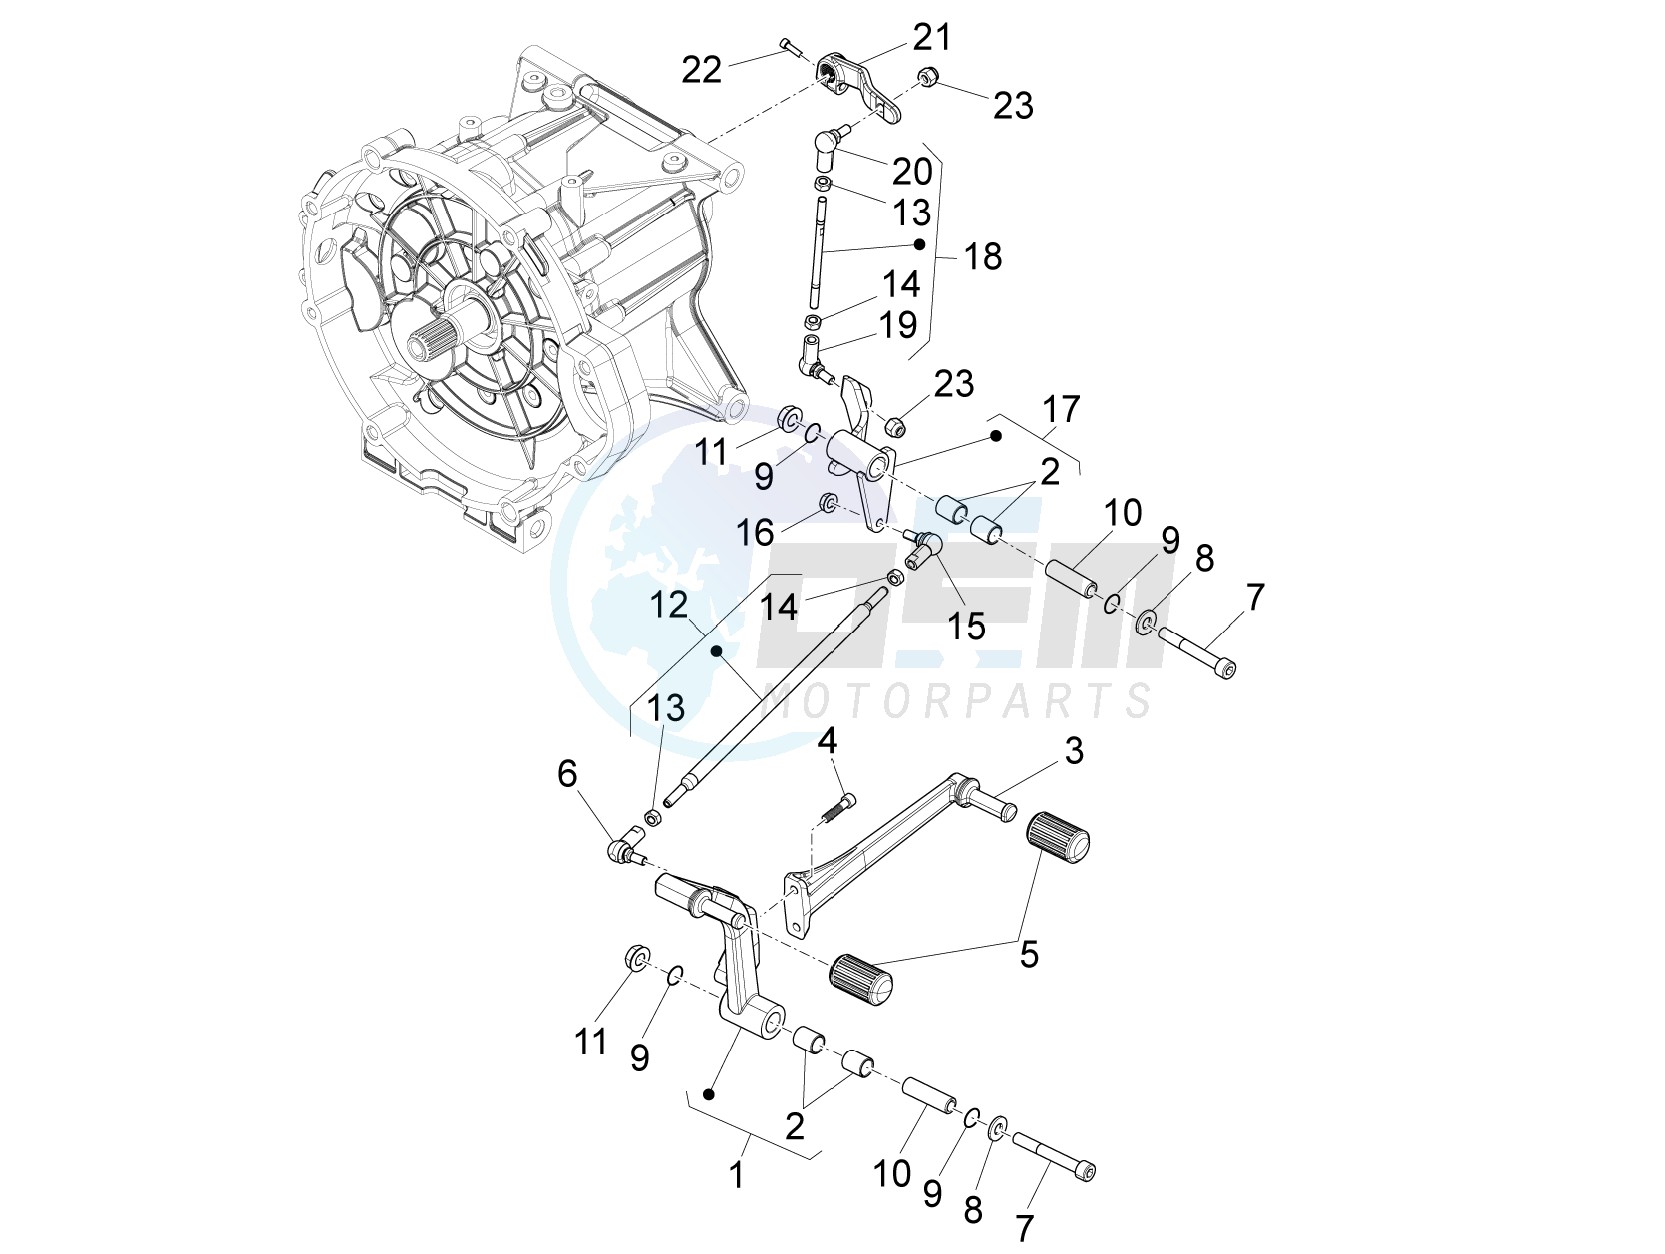 Gear lever blueprint